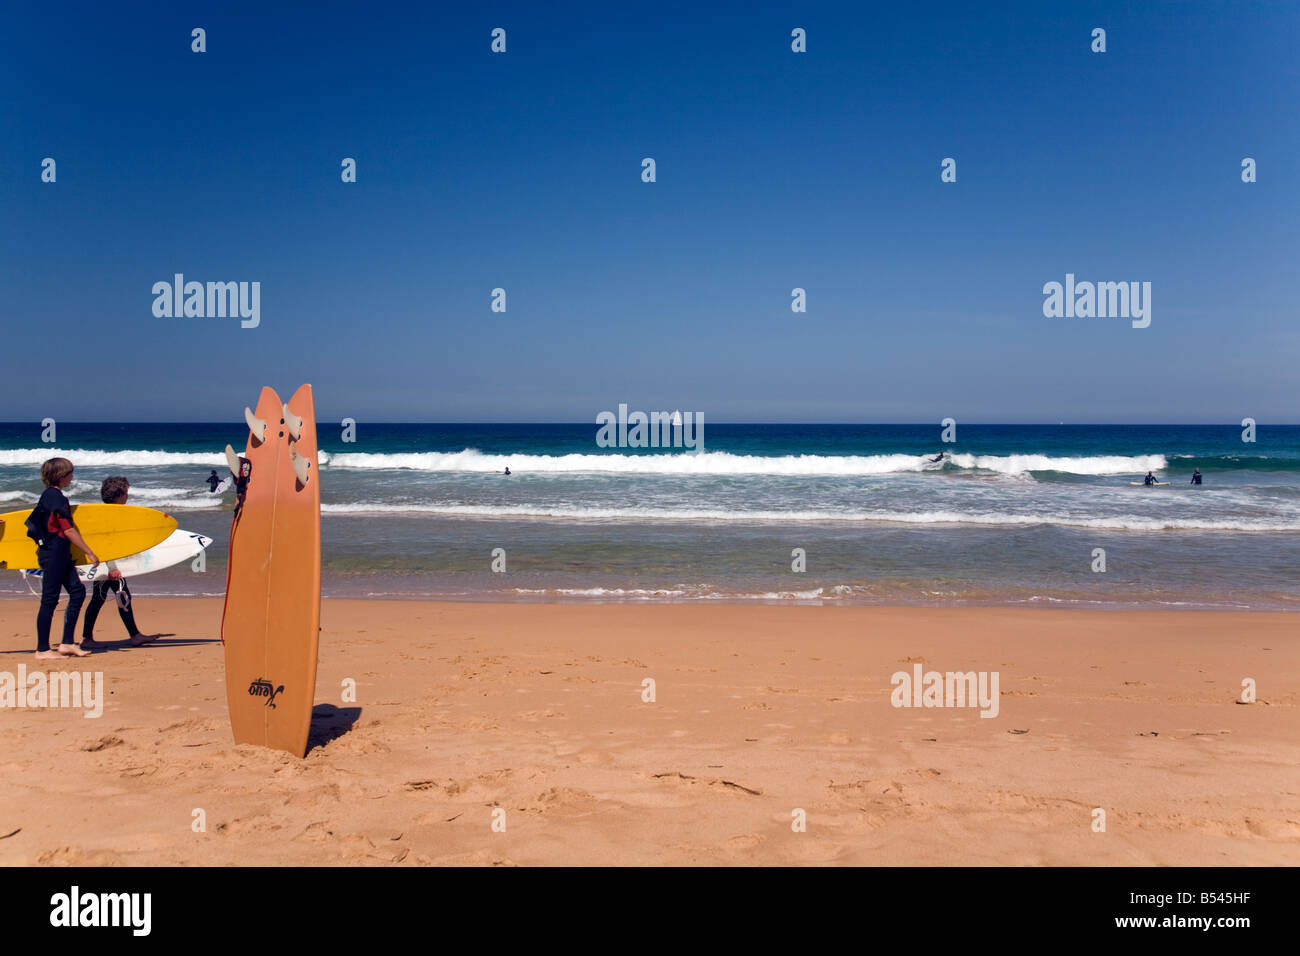 Ciel bleu profond sur bungan beach, Sydney, Australie, deux jeunes garçons à pied avec leurs planches de surf Banque D'Images